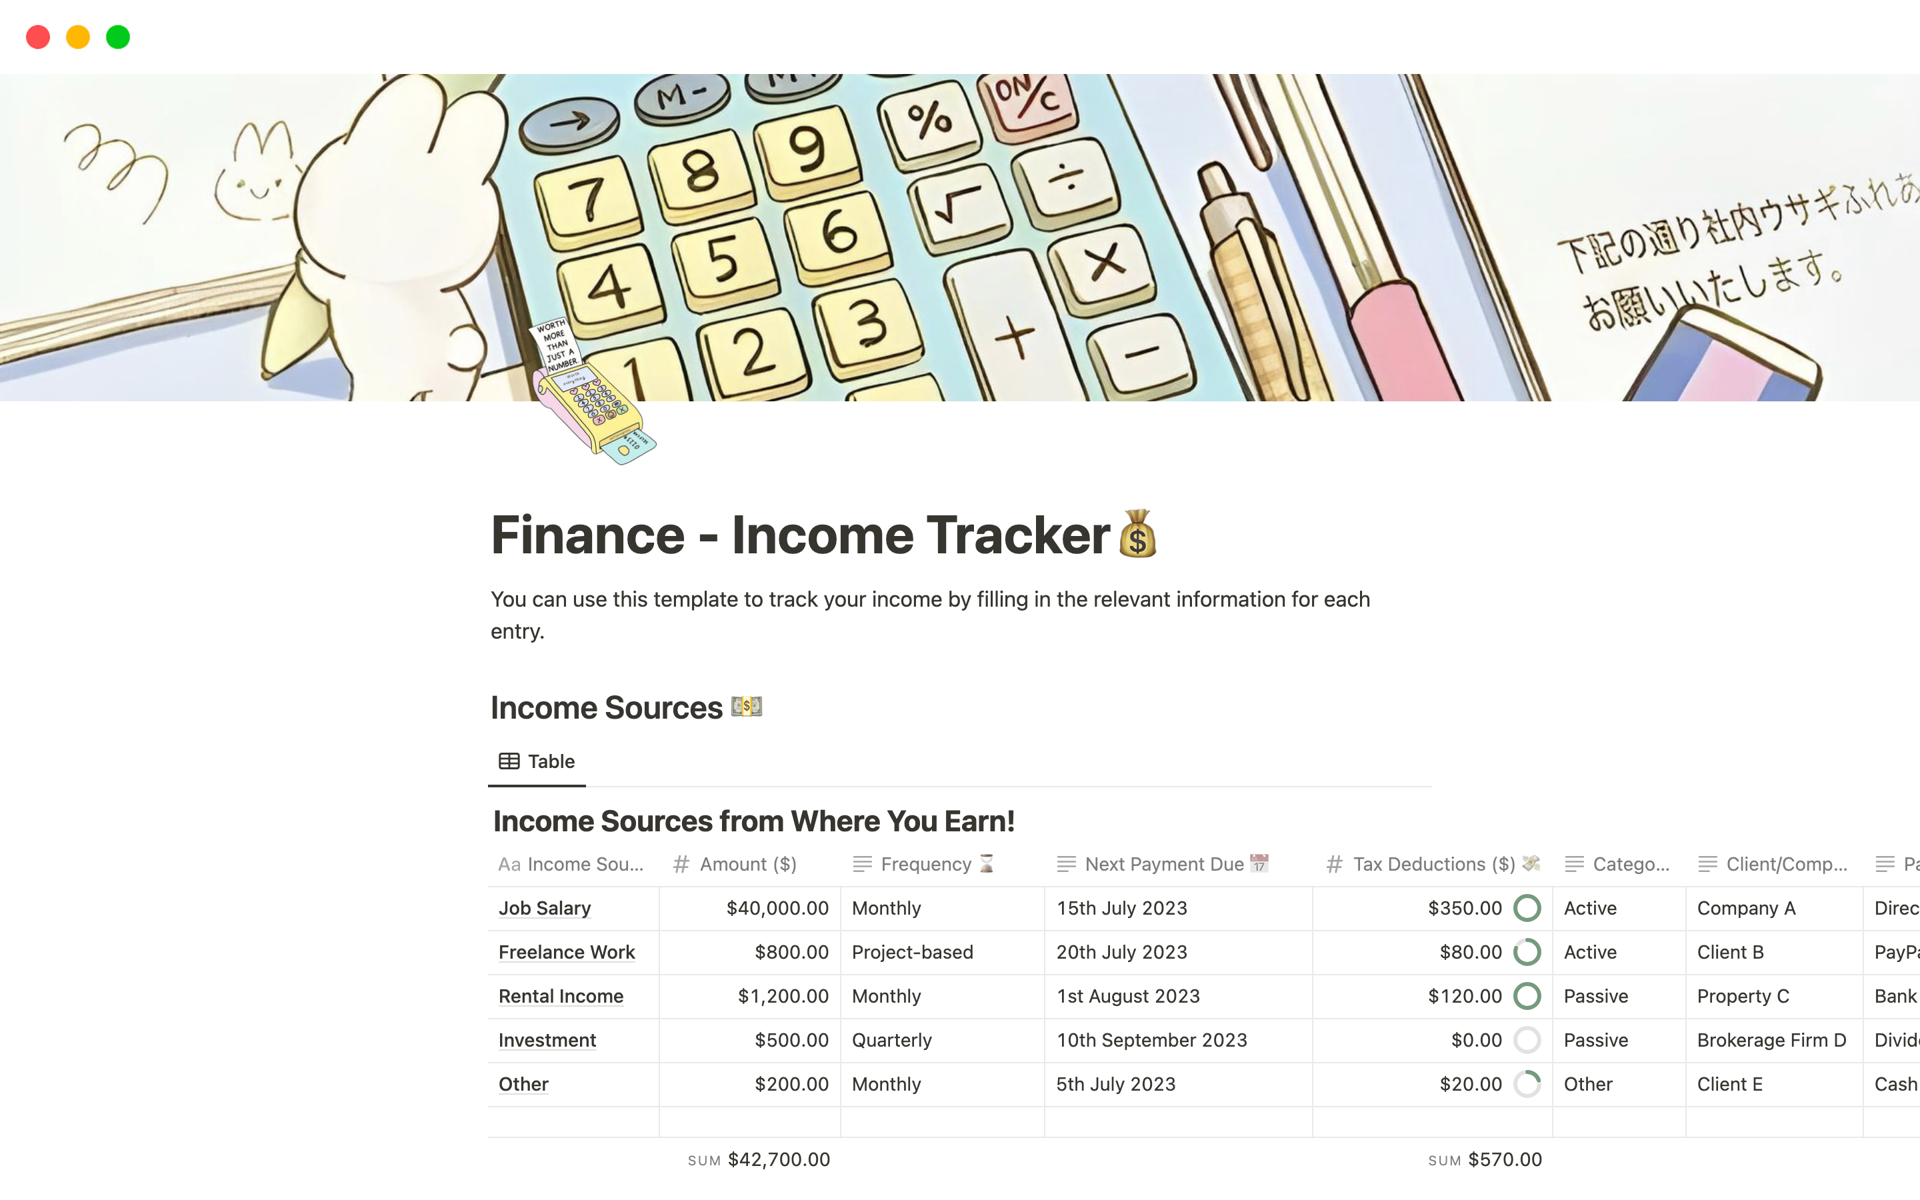 En förhandsgranskning av mallen för Finance - Income Tracker